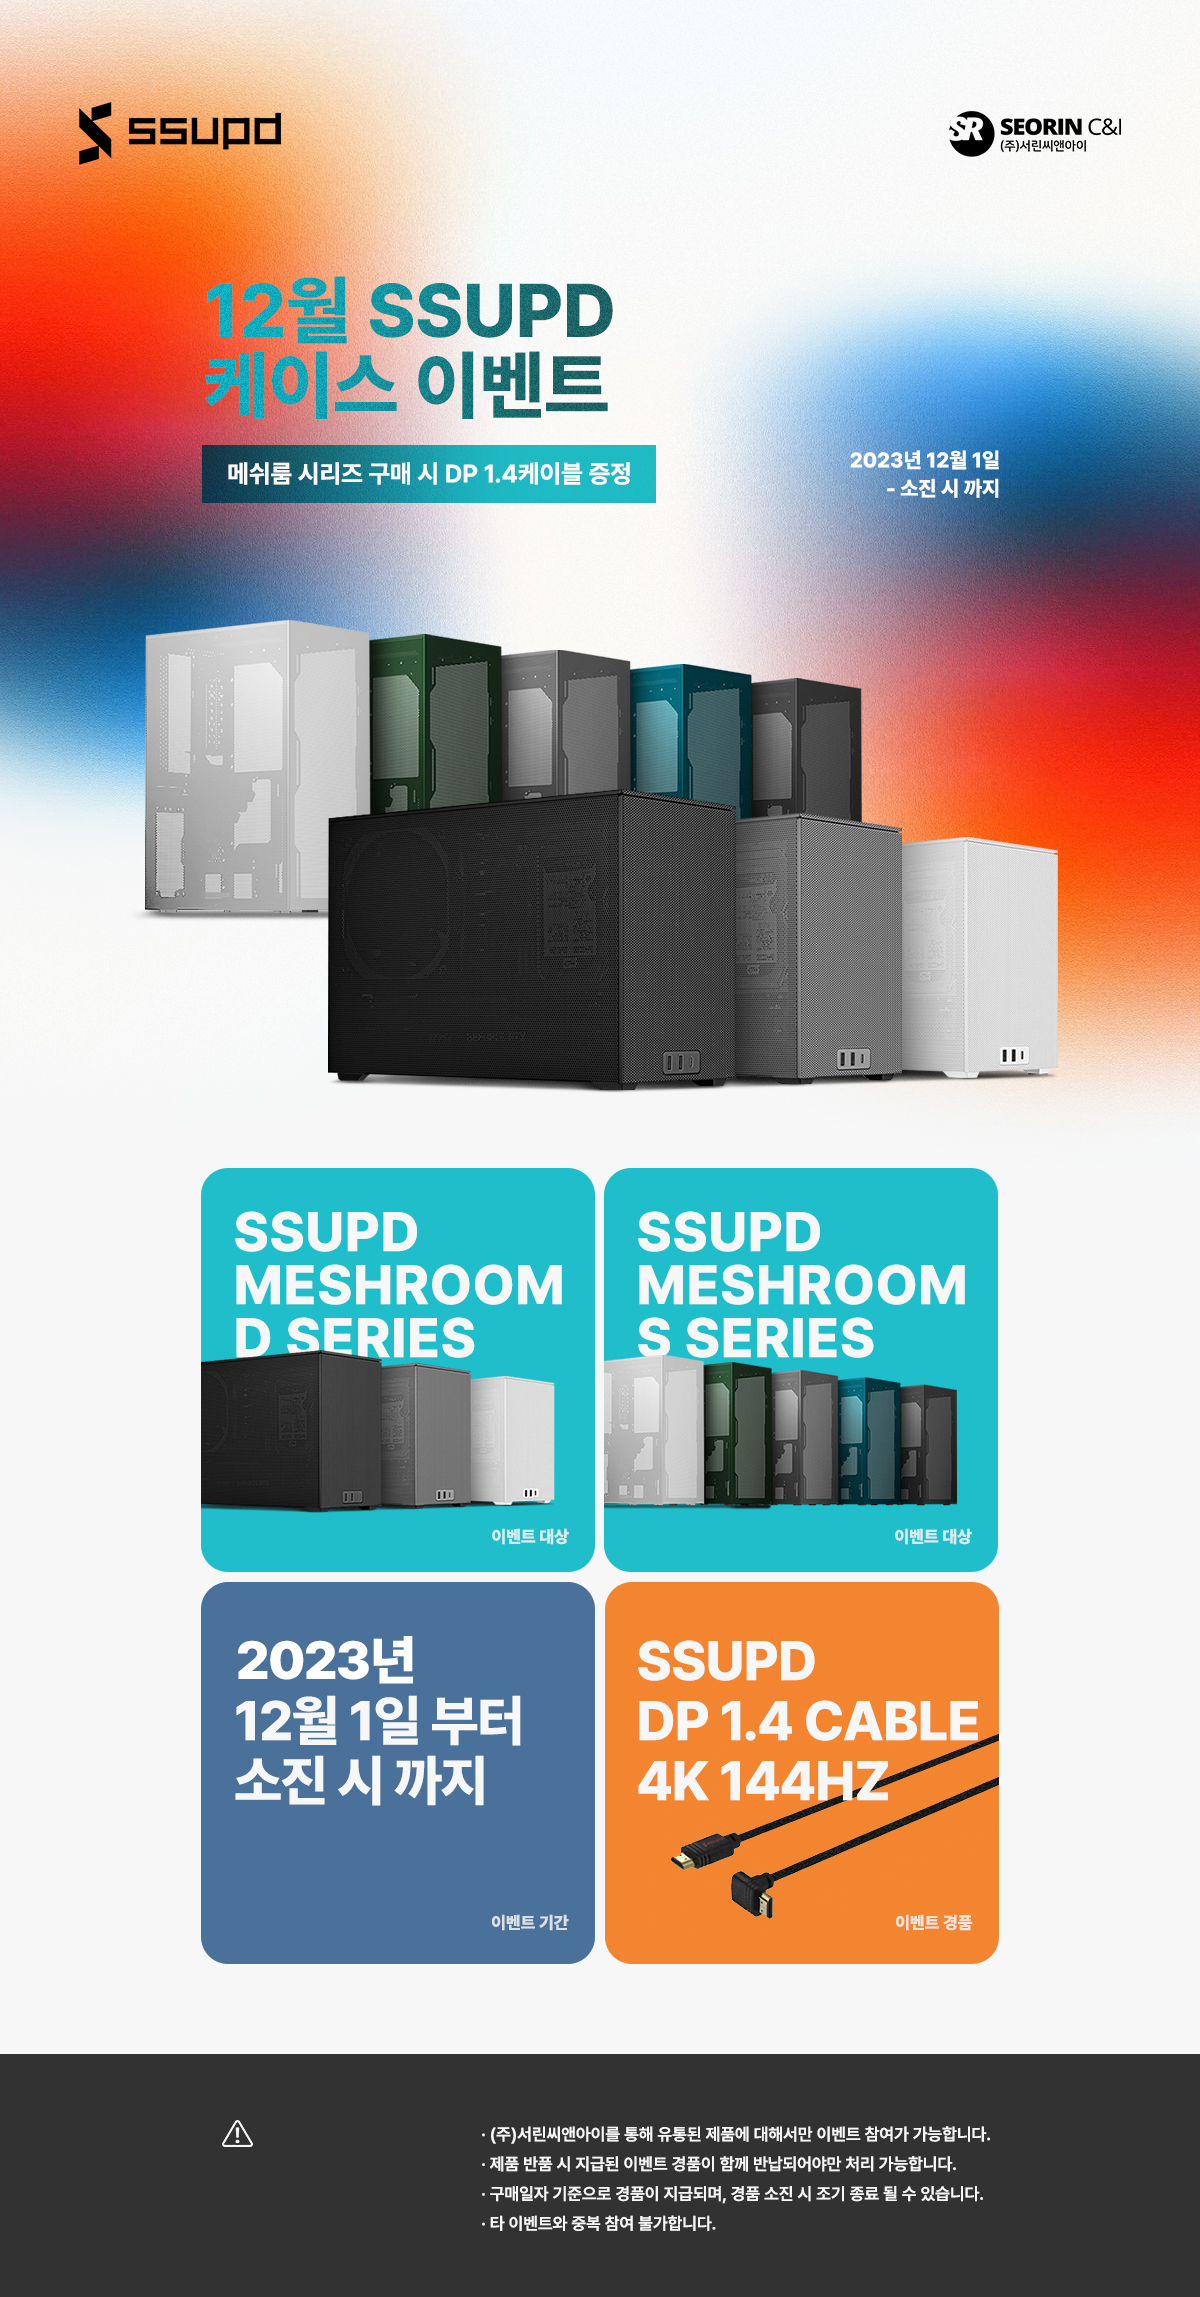 SSUPD 메쉬룸 시리즈 8종 구매시 DP 1.4 케이블 증정